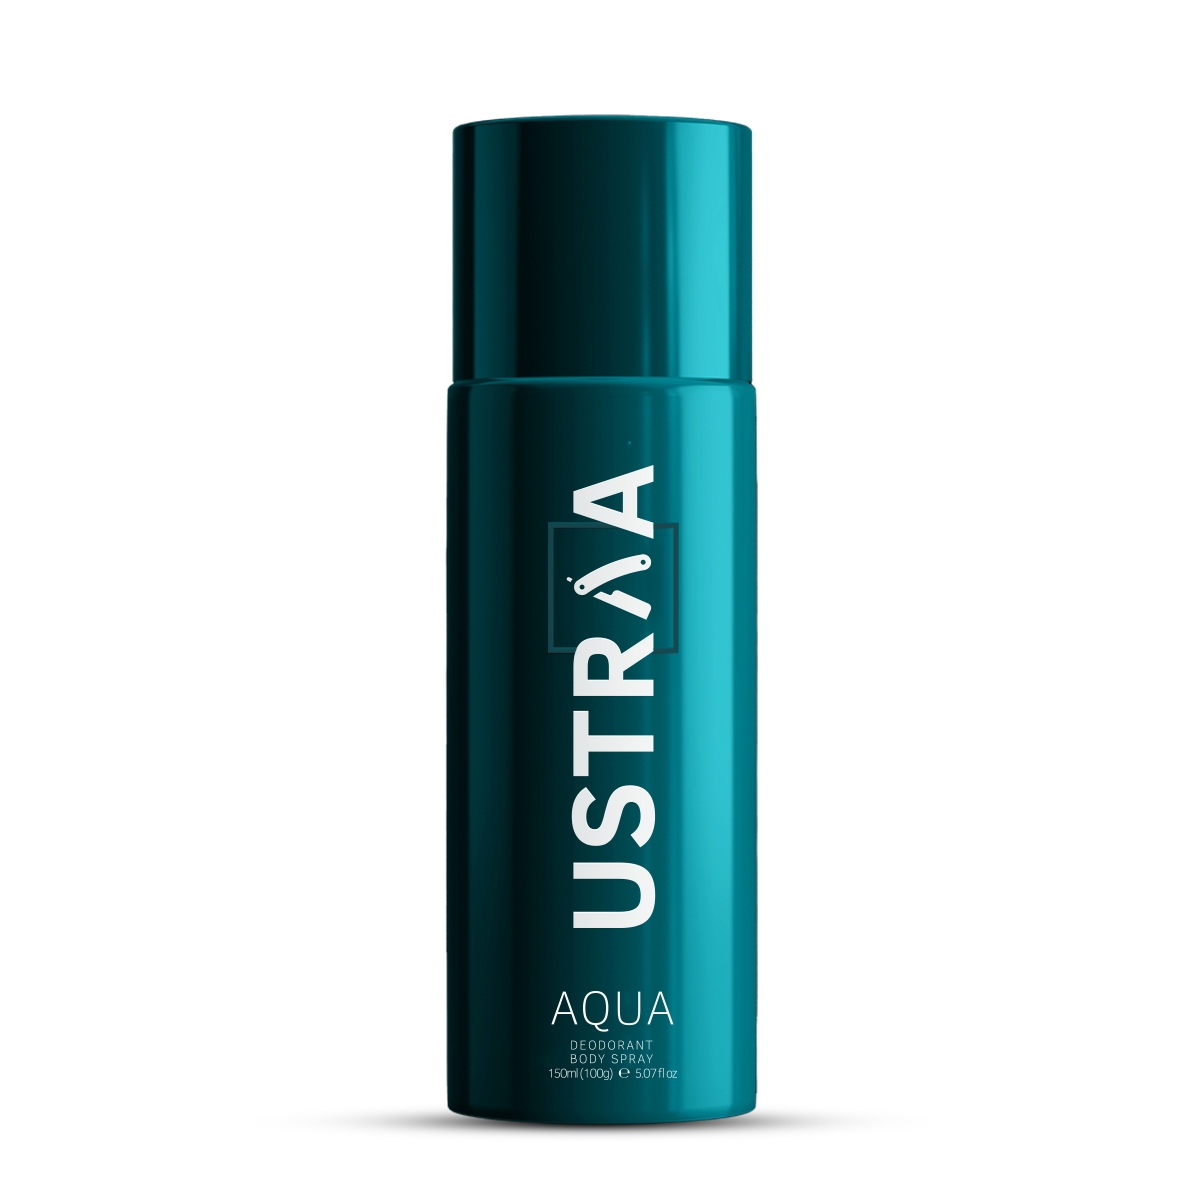 Ustraa Deodorant For Men, Aqua, 150ml